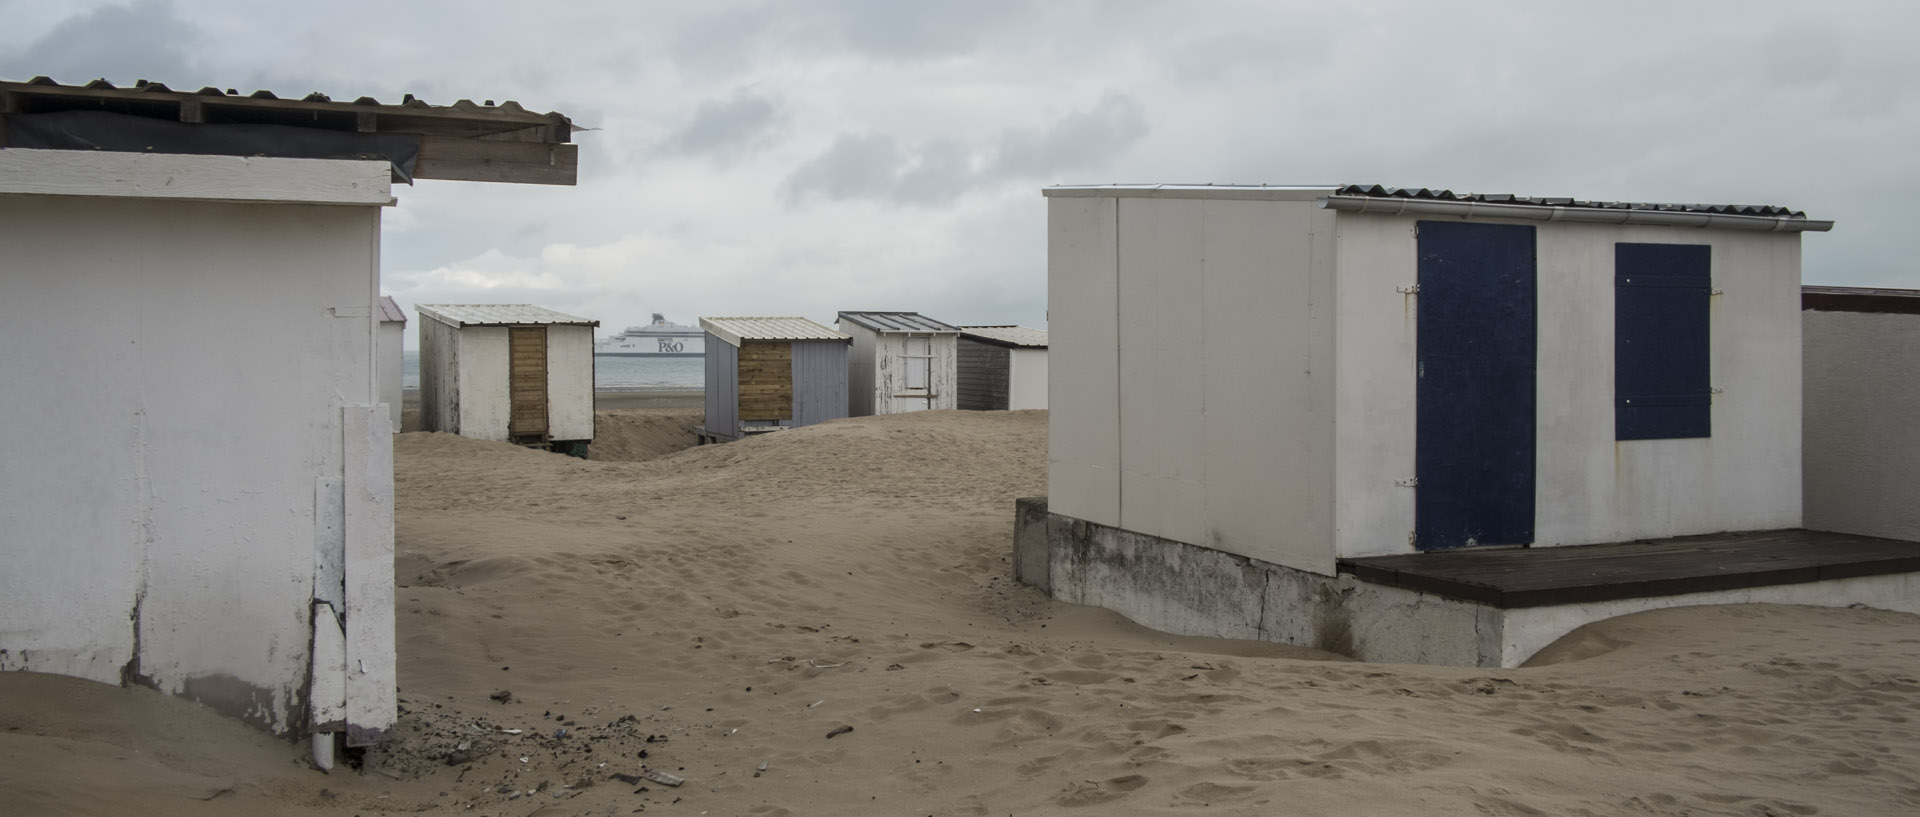 Mercredi 4 novembre 2015, 14:01, plage de Calais